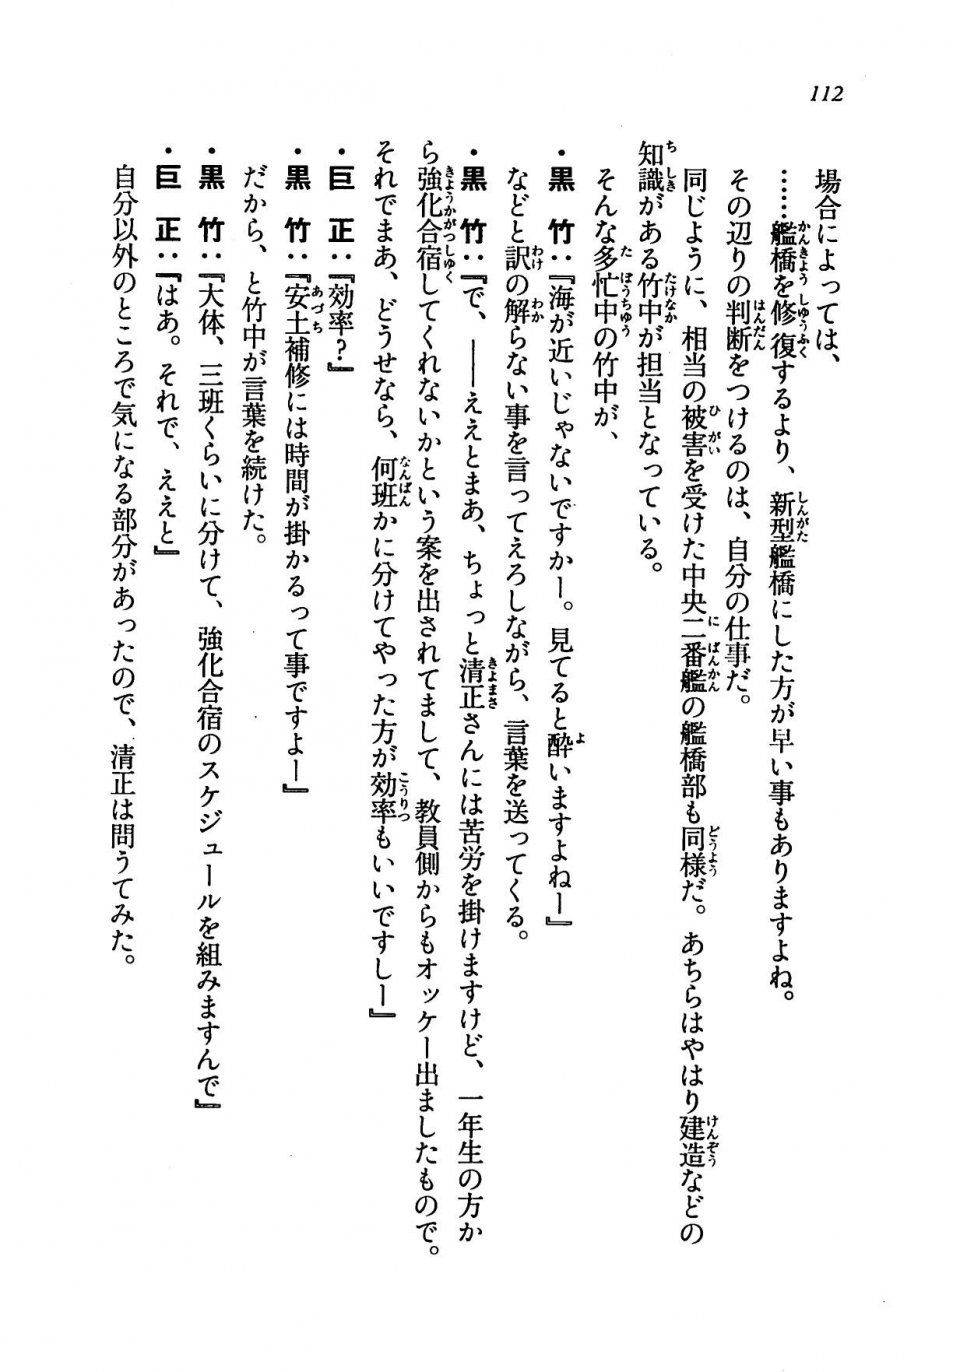 Kyoukai Senjou no Horizon LN Vol 19(8A) - Photo #112